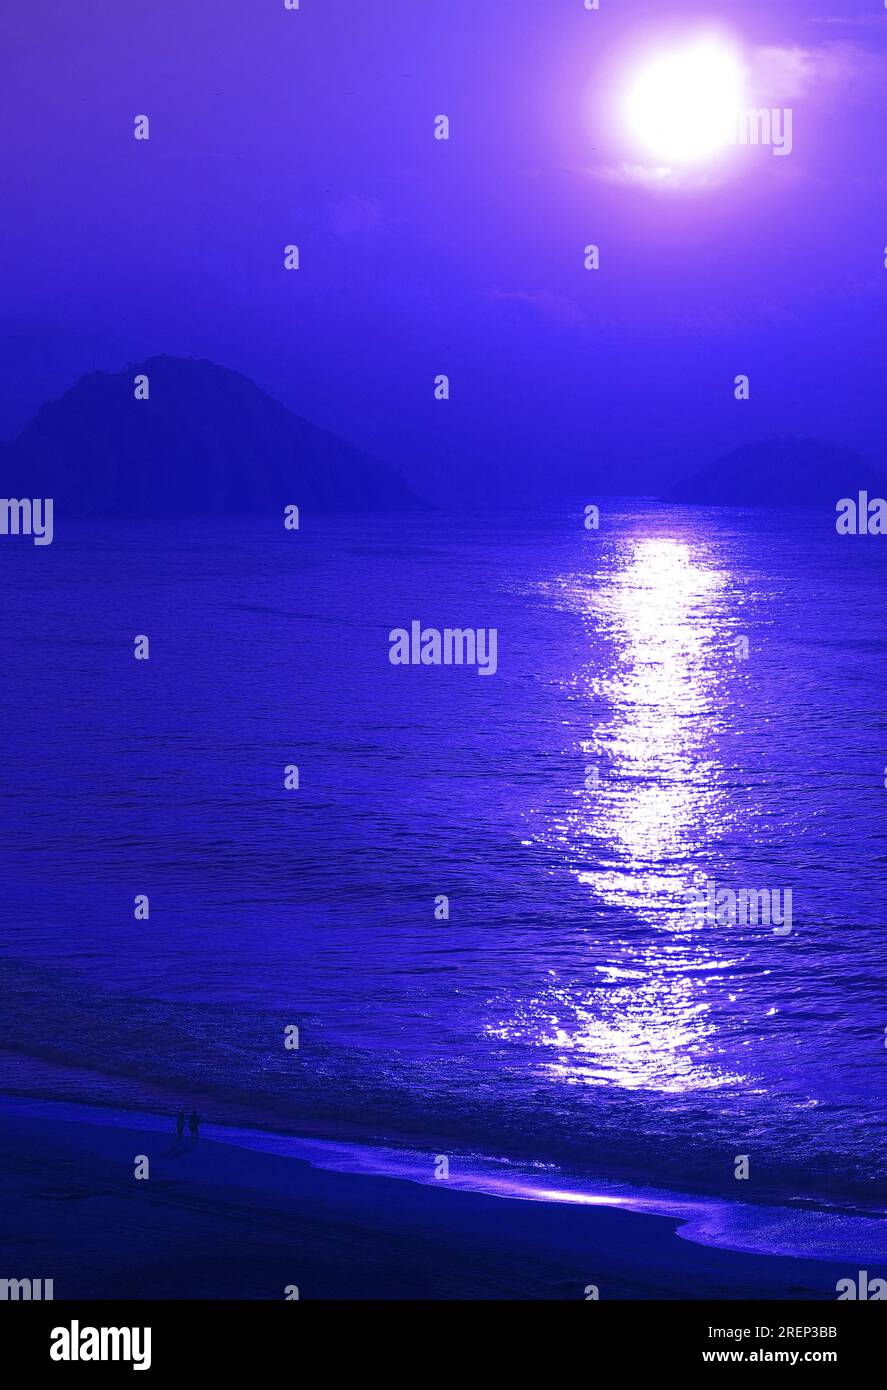 Pop art stile surreale di sole luminoso che sorge sul mare in un colore blu ultramarino Foto Stock